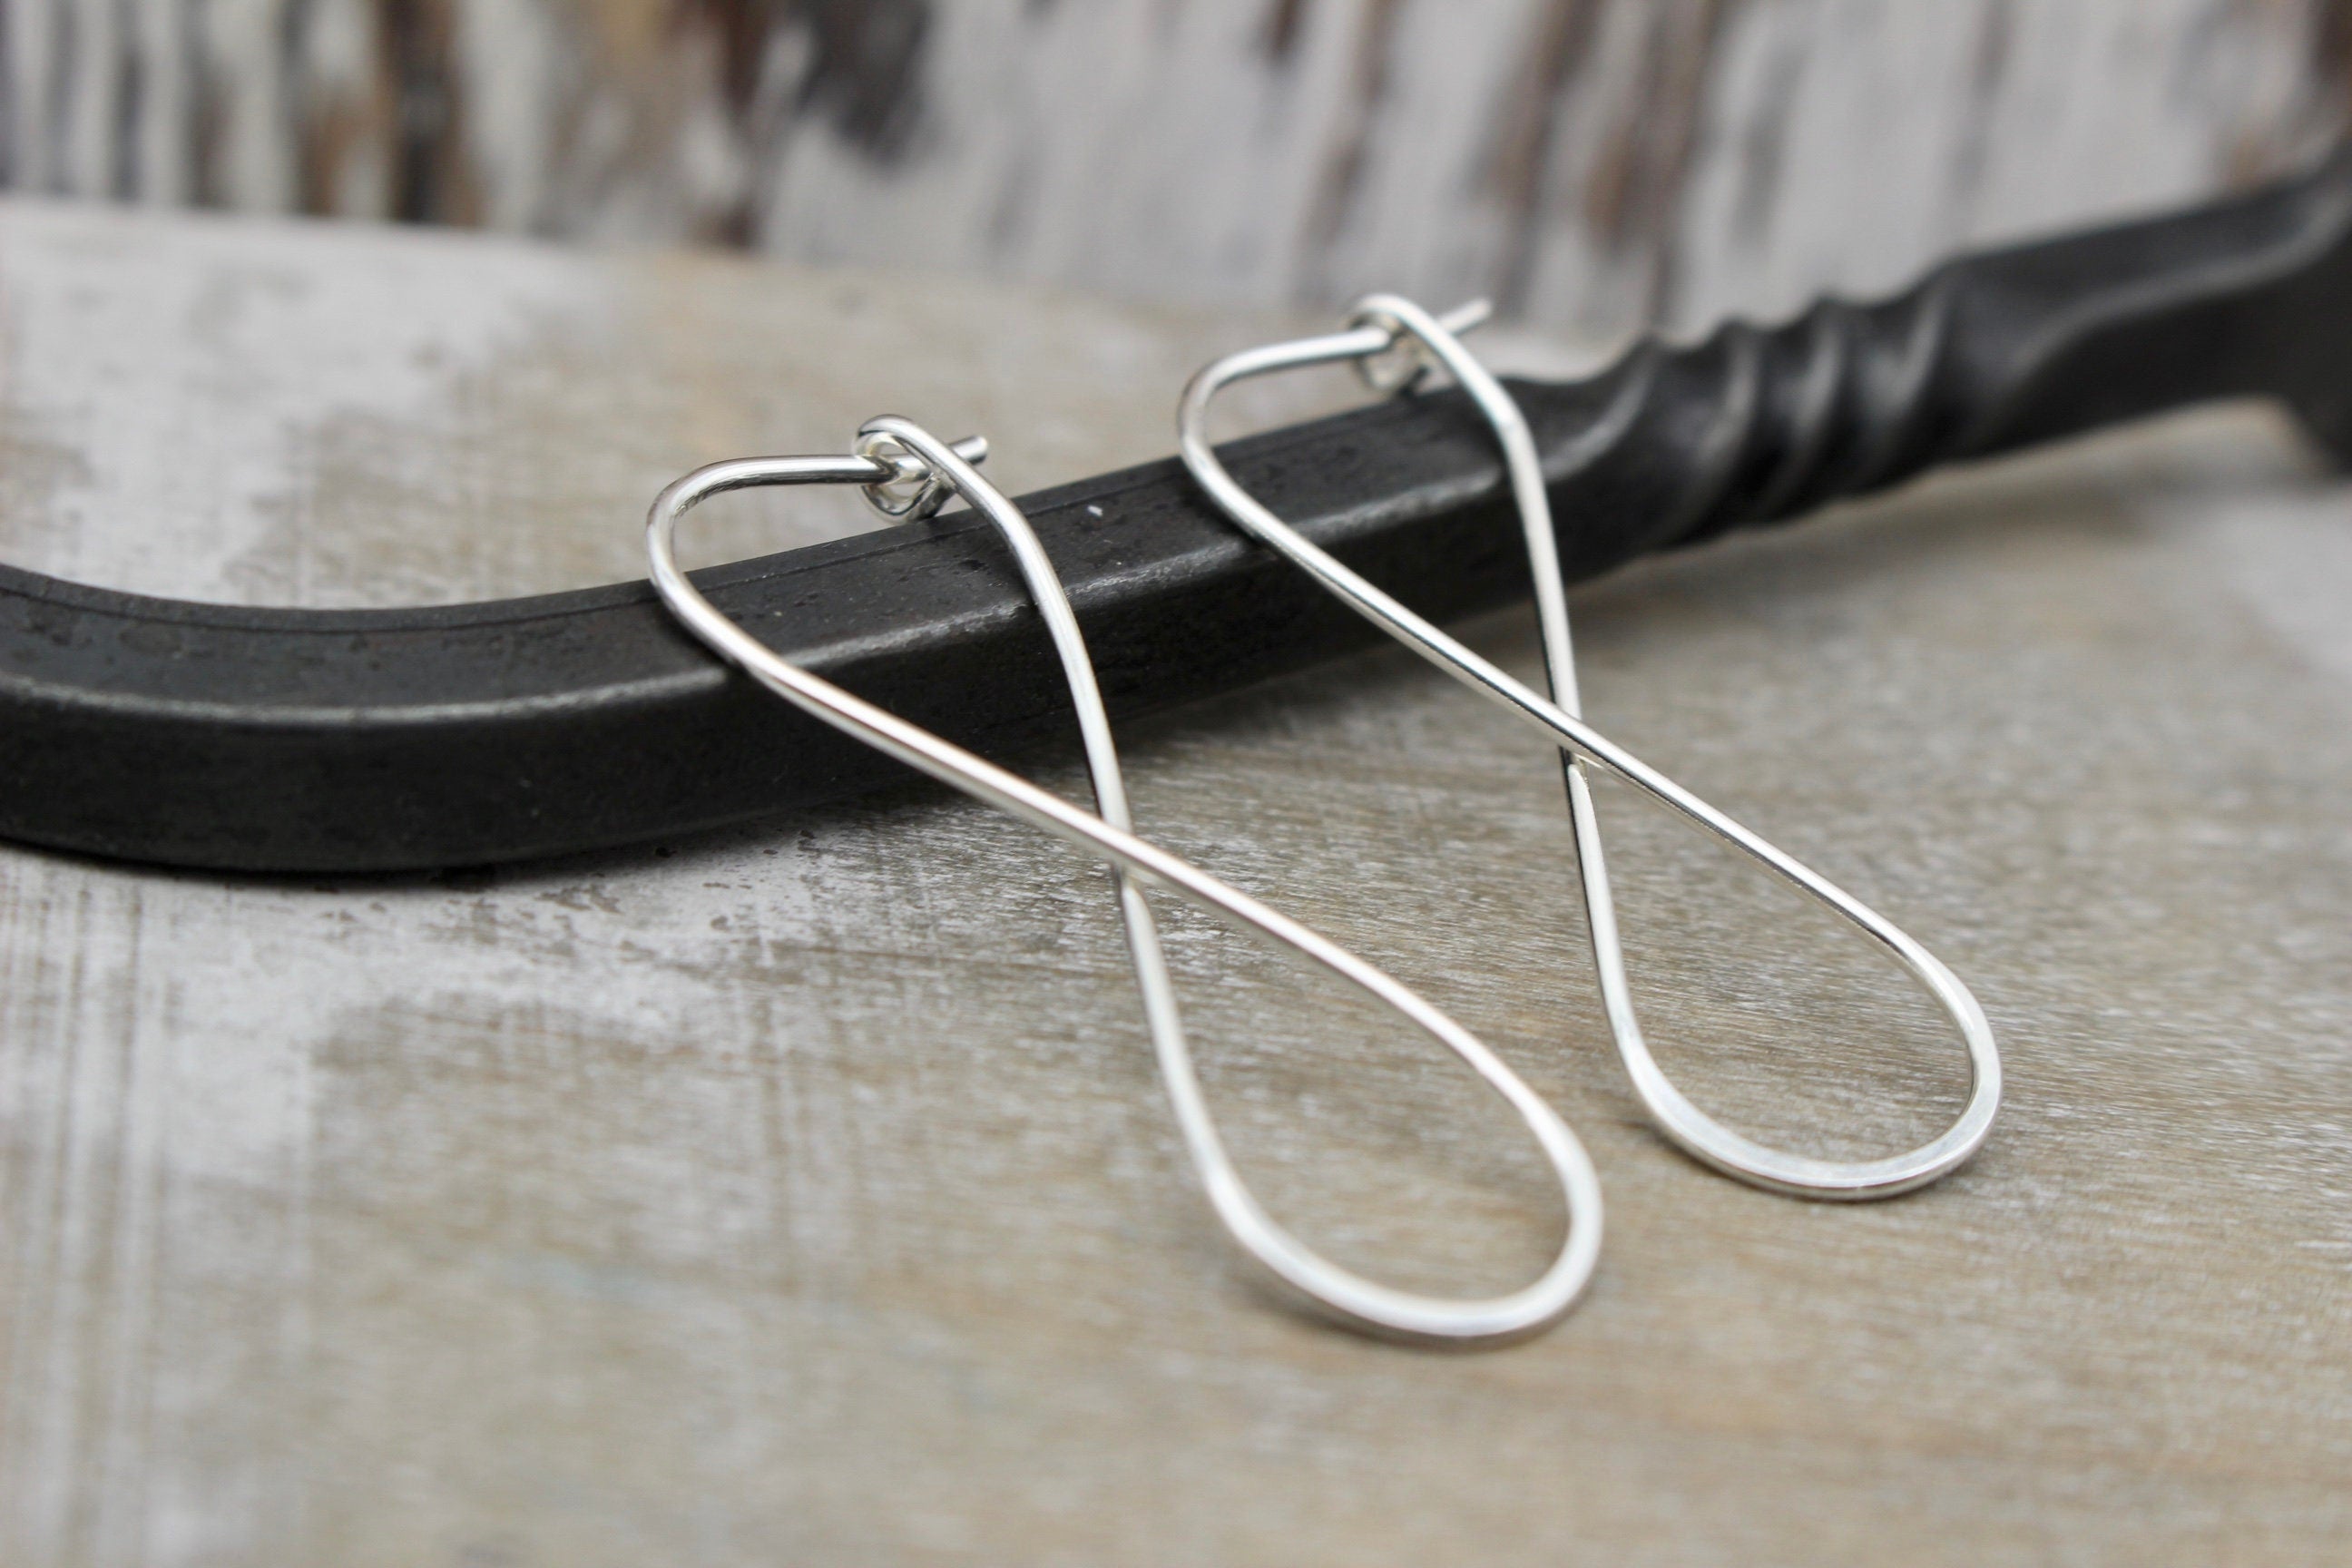 Silver Infinity Hoop Earrings - Sterling Silver hoop Earrings - gift for her - jewelry sale - simple hoops - Earrings